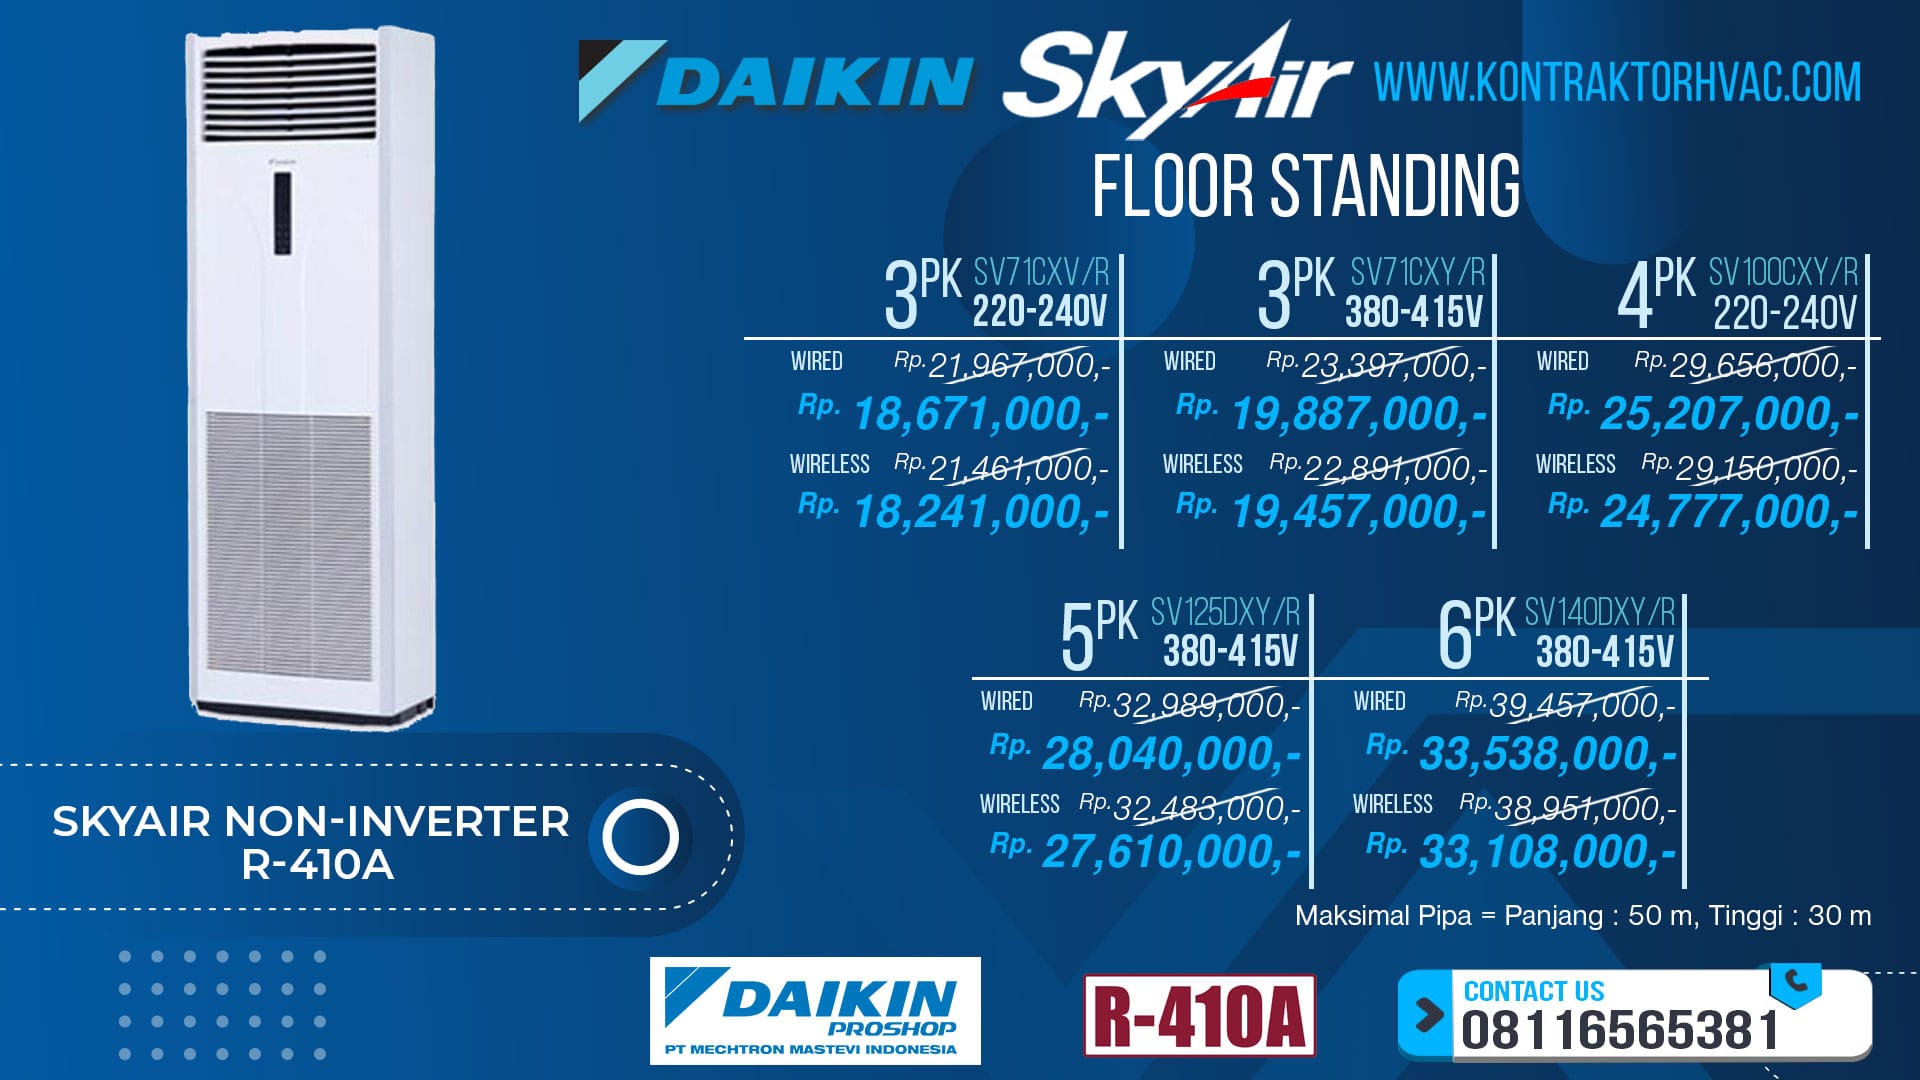 3.Skyair-Non-Inverter-R-410A-Floor-Standing-min